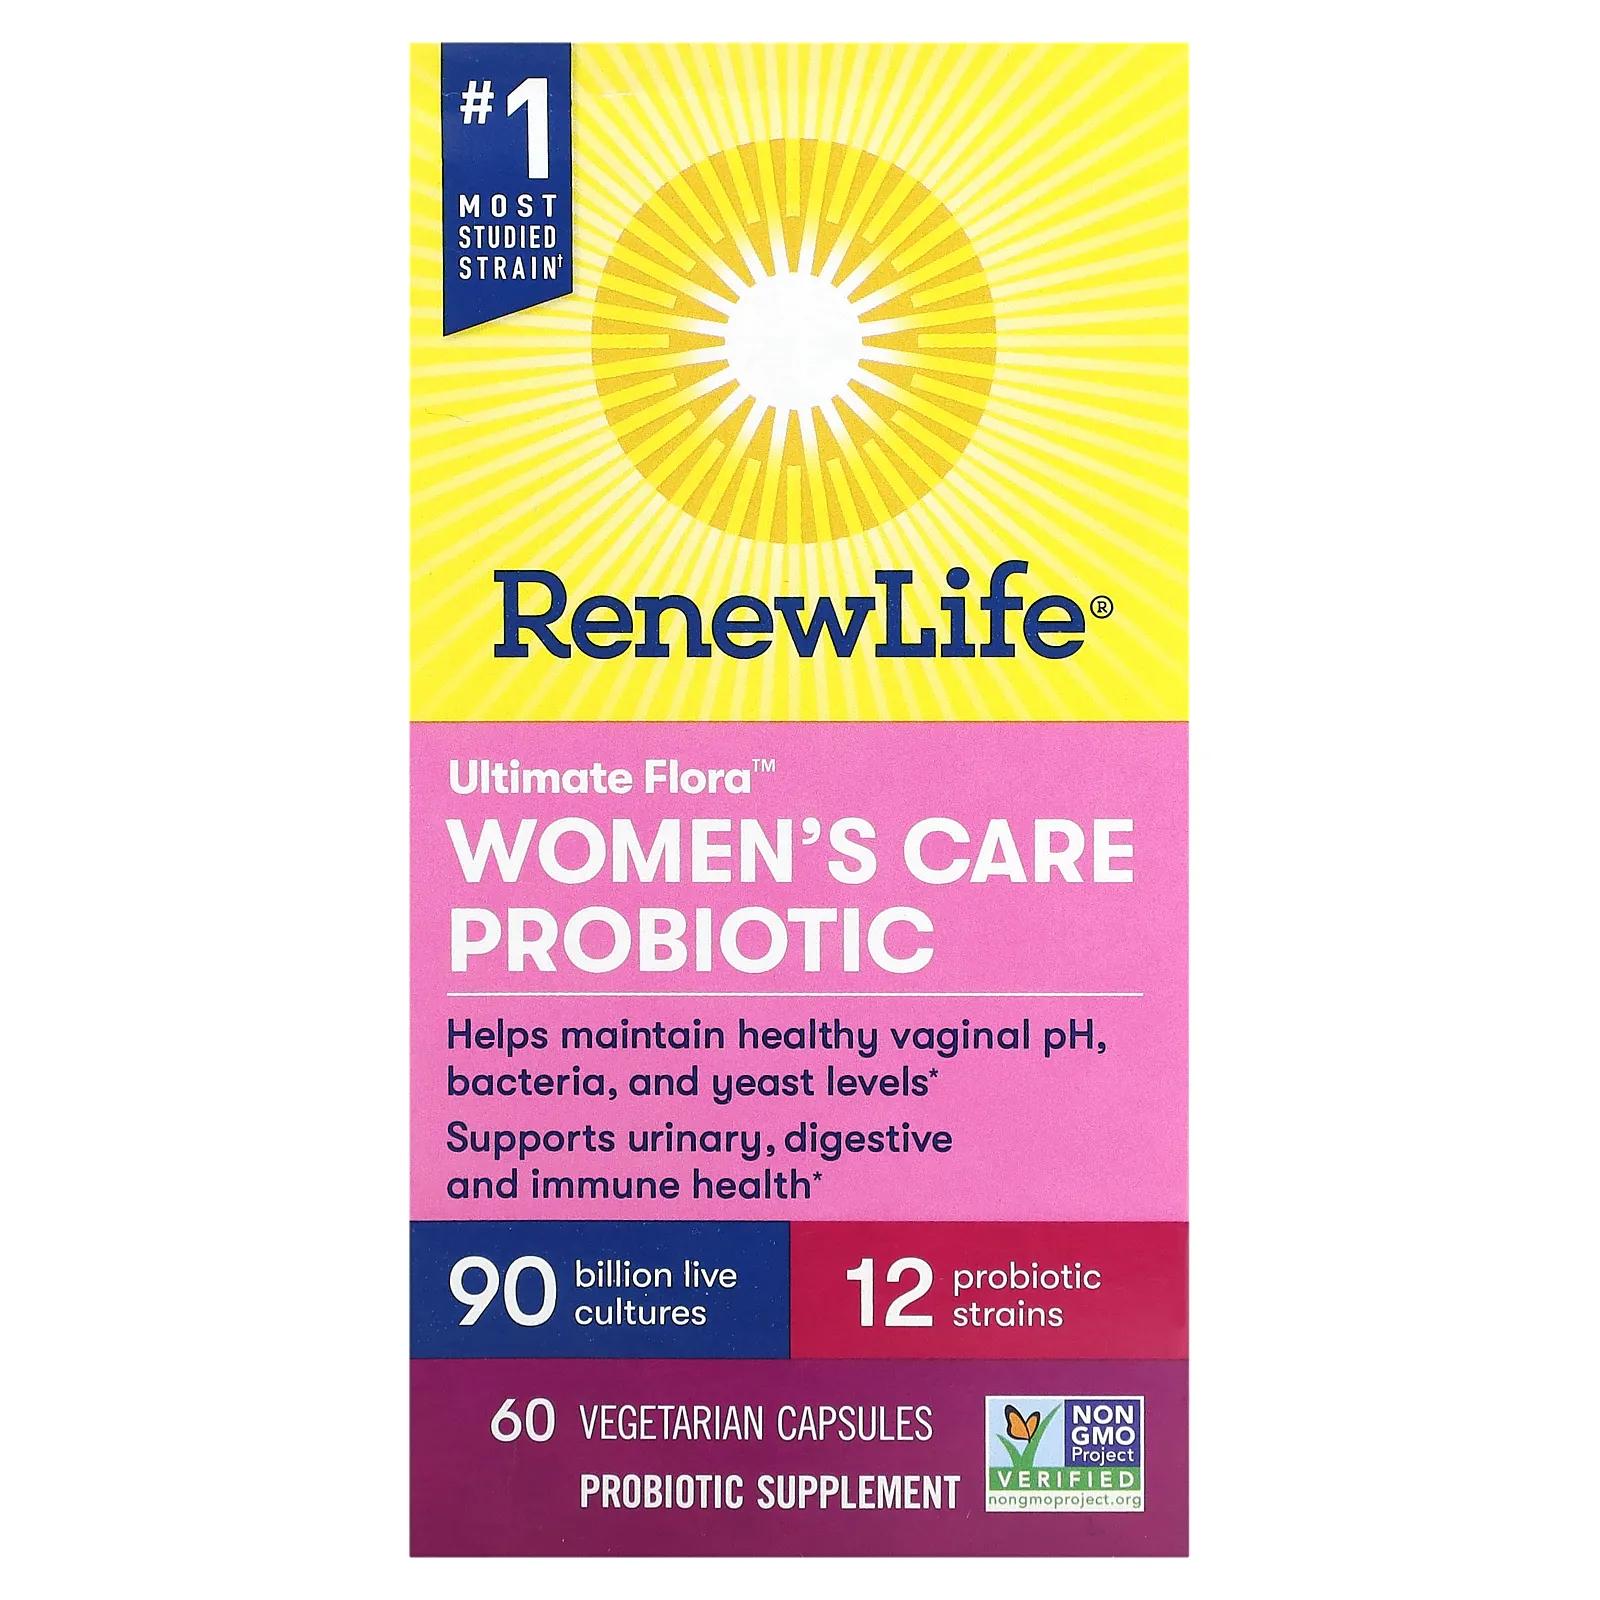 Renew Life Пробиотик Ultimate Flora Women's Care 90 миллиардов 60 вег капсул пробиотик усиленный ultimate flora 60 капсул renew life